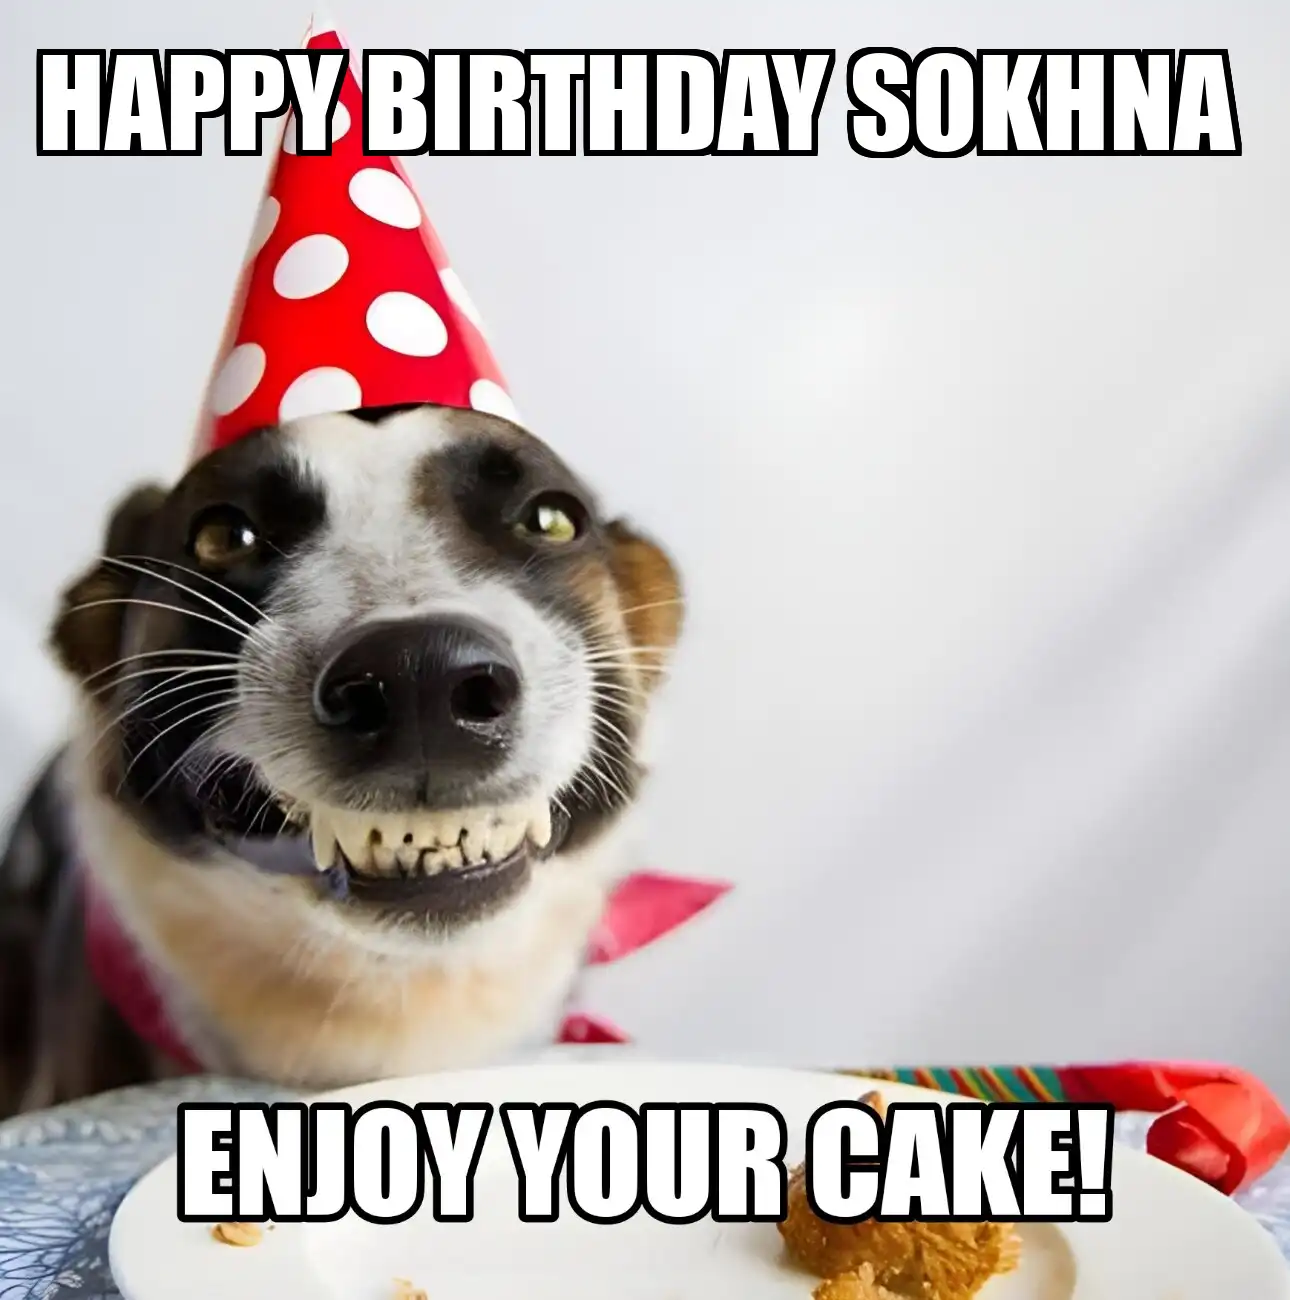 Happy Birthday Sokhna Enjoy Your Cake Dog Meme